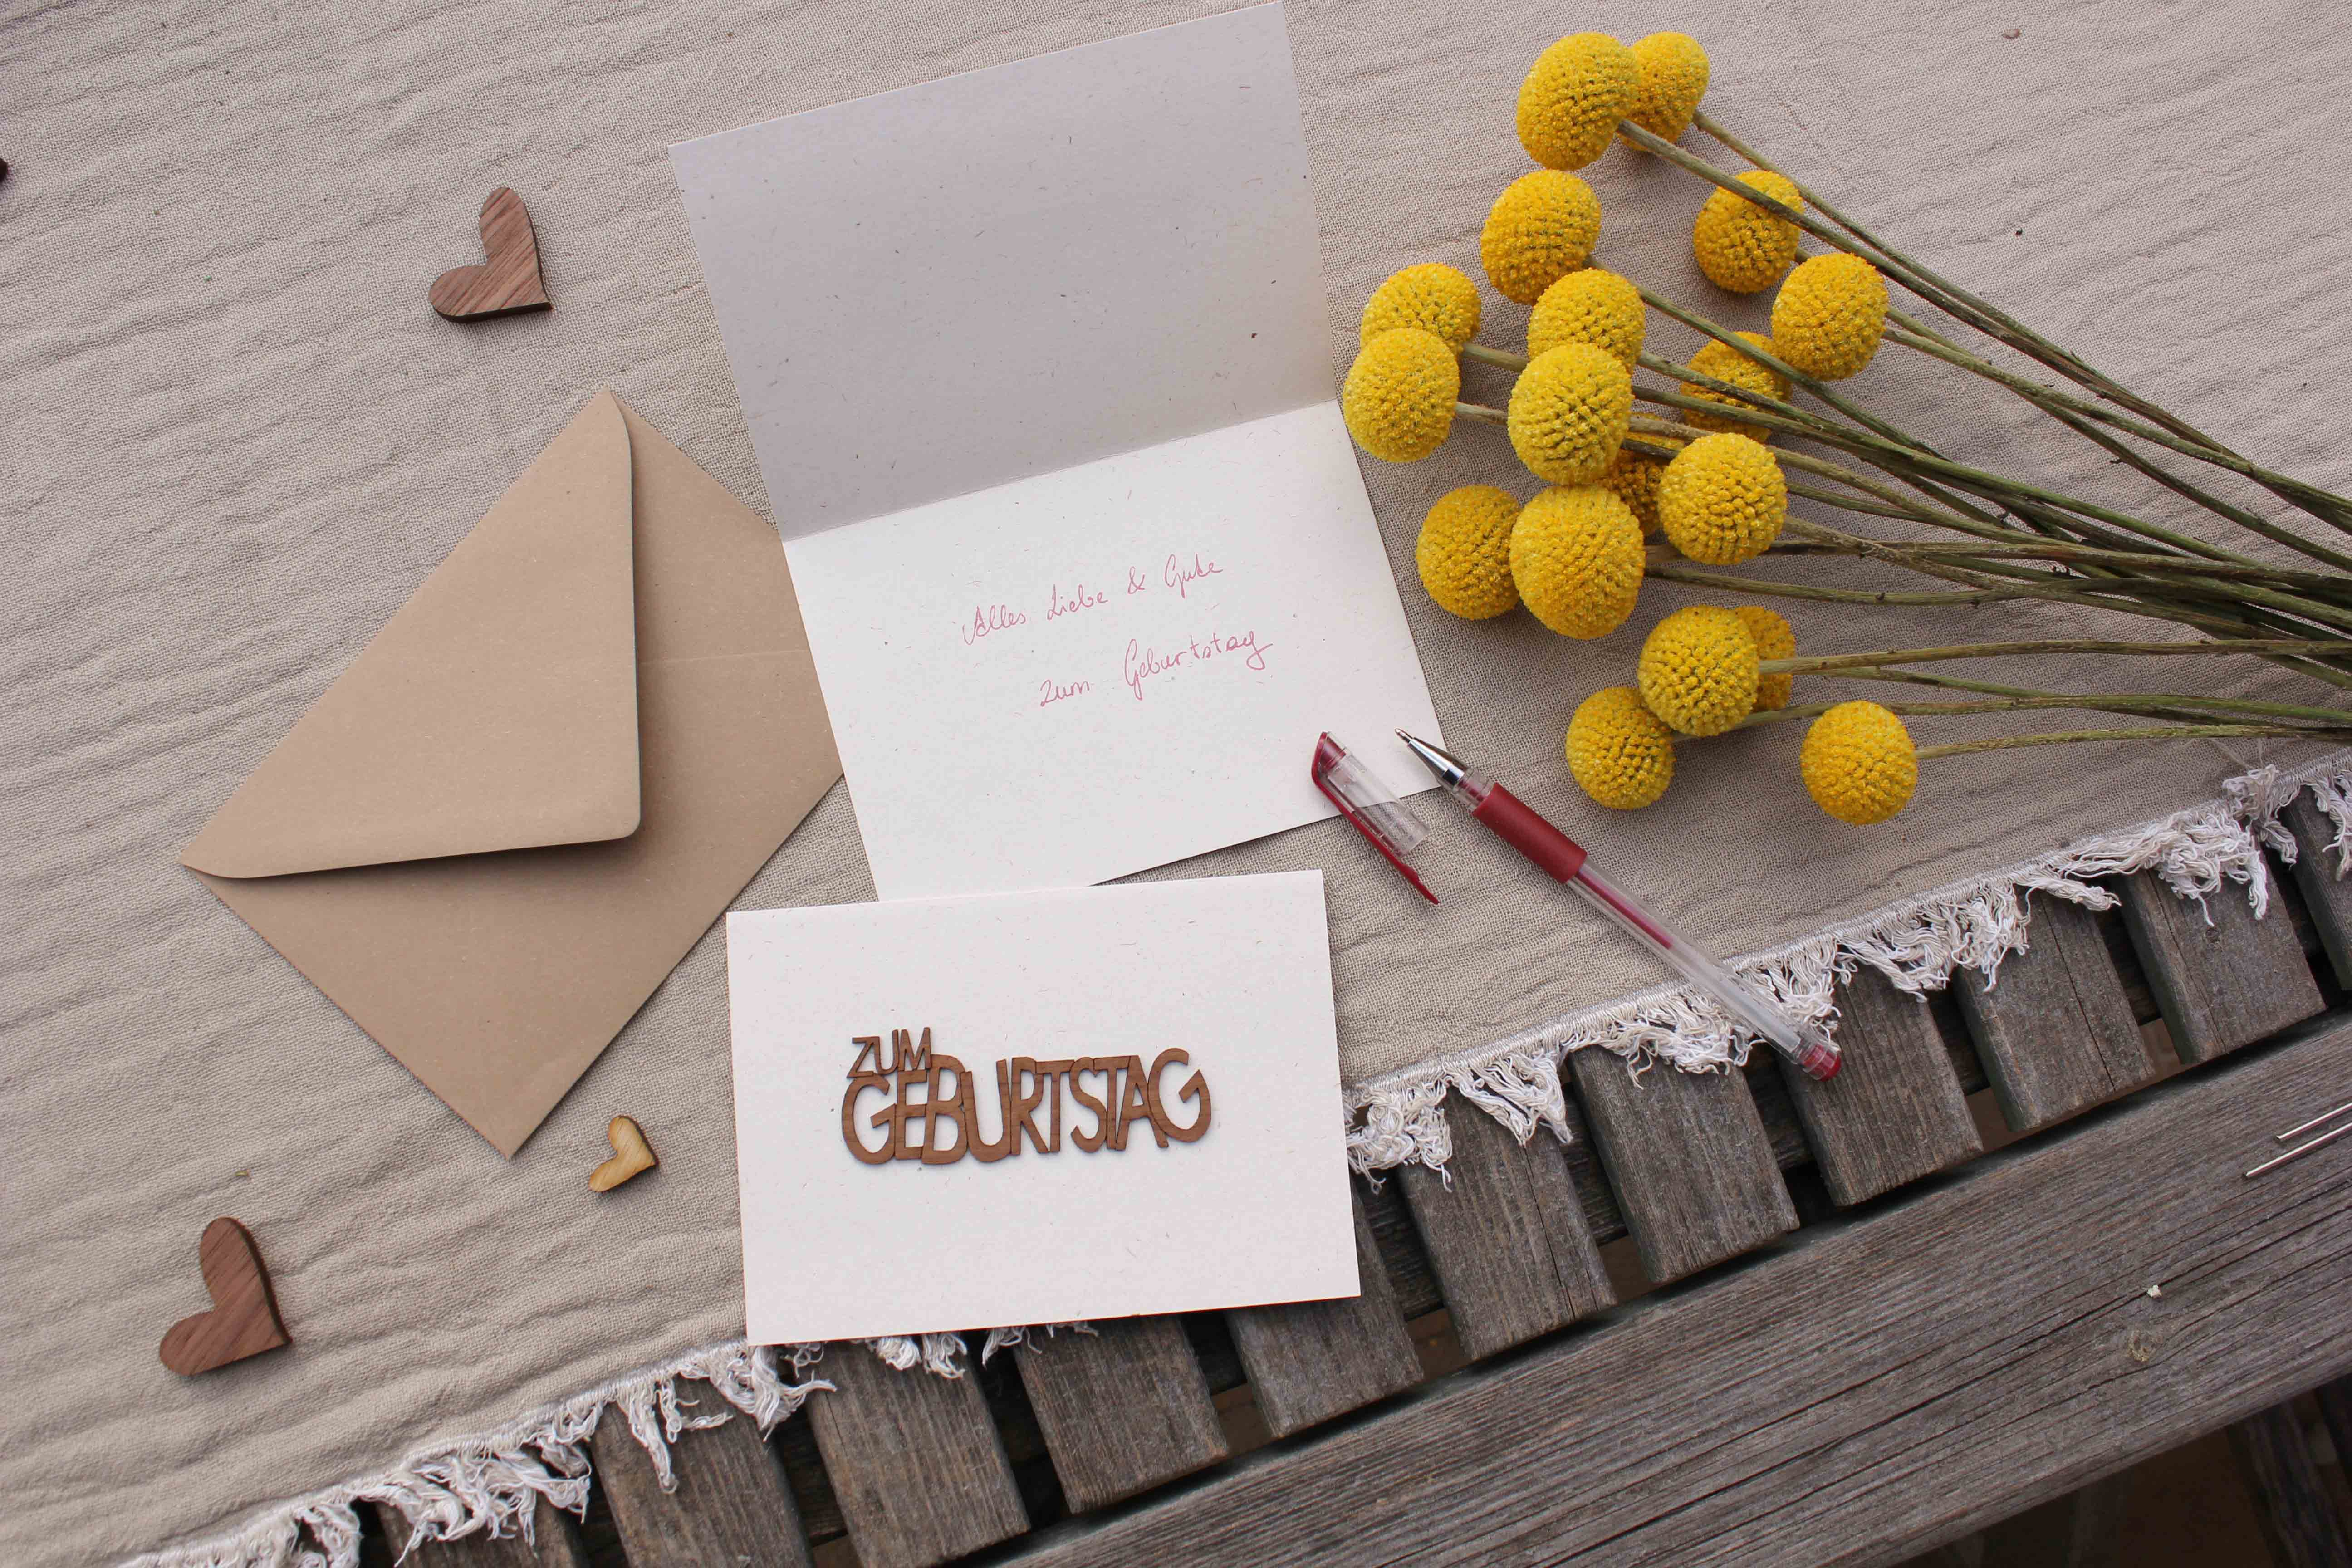 Holzgrusskarten - Papierkarte mit Schriftzug "Zum Geburtstag" aus Nuss, Geburtstagskarte